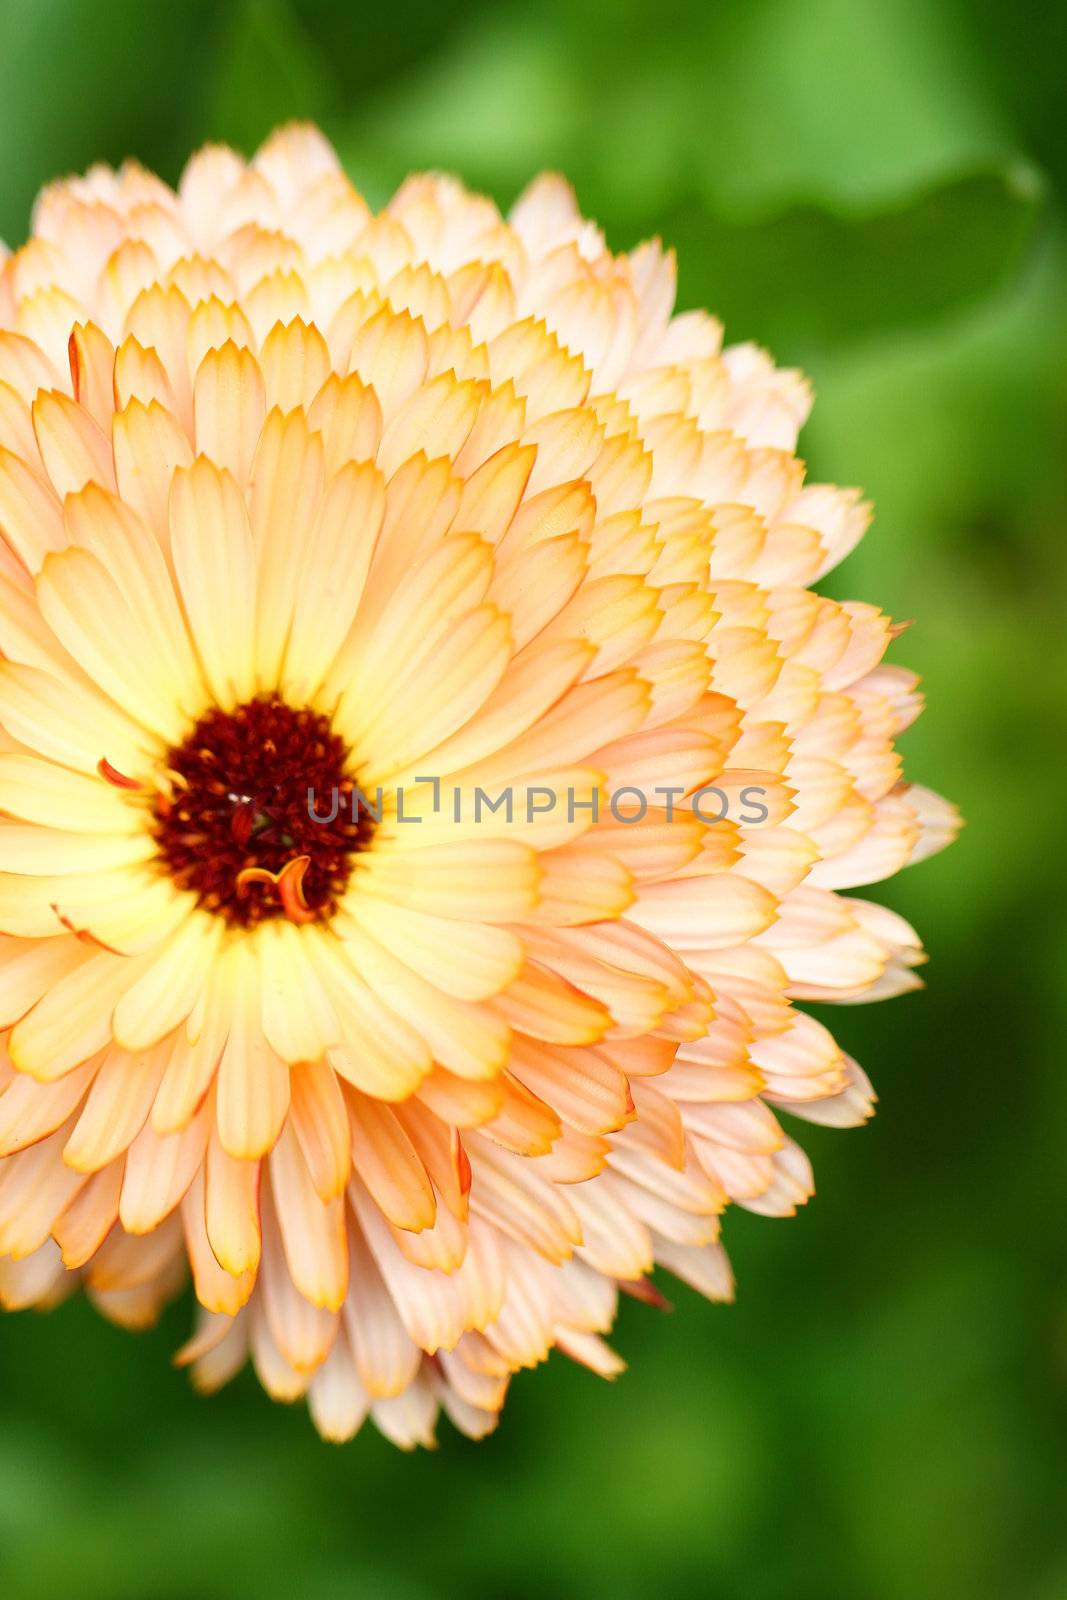 Orange chrysanthemum close-up by kawing921